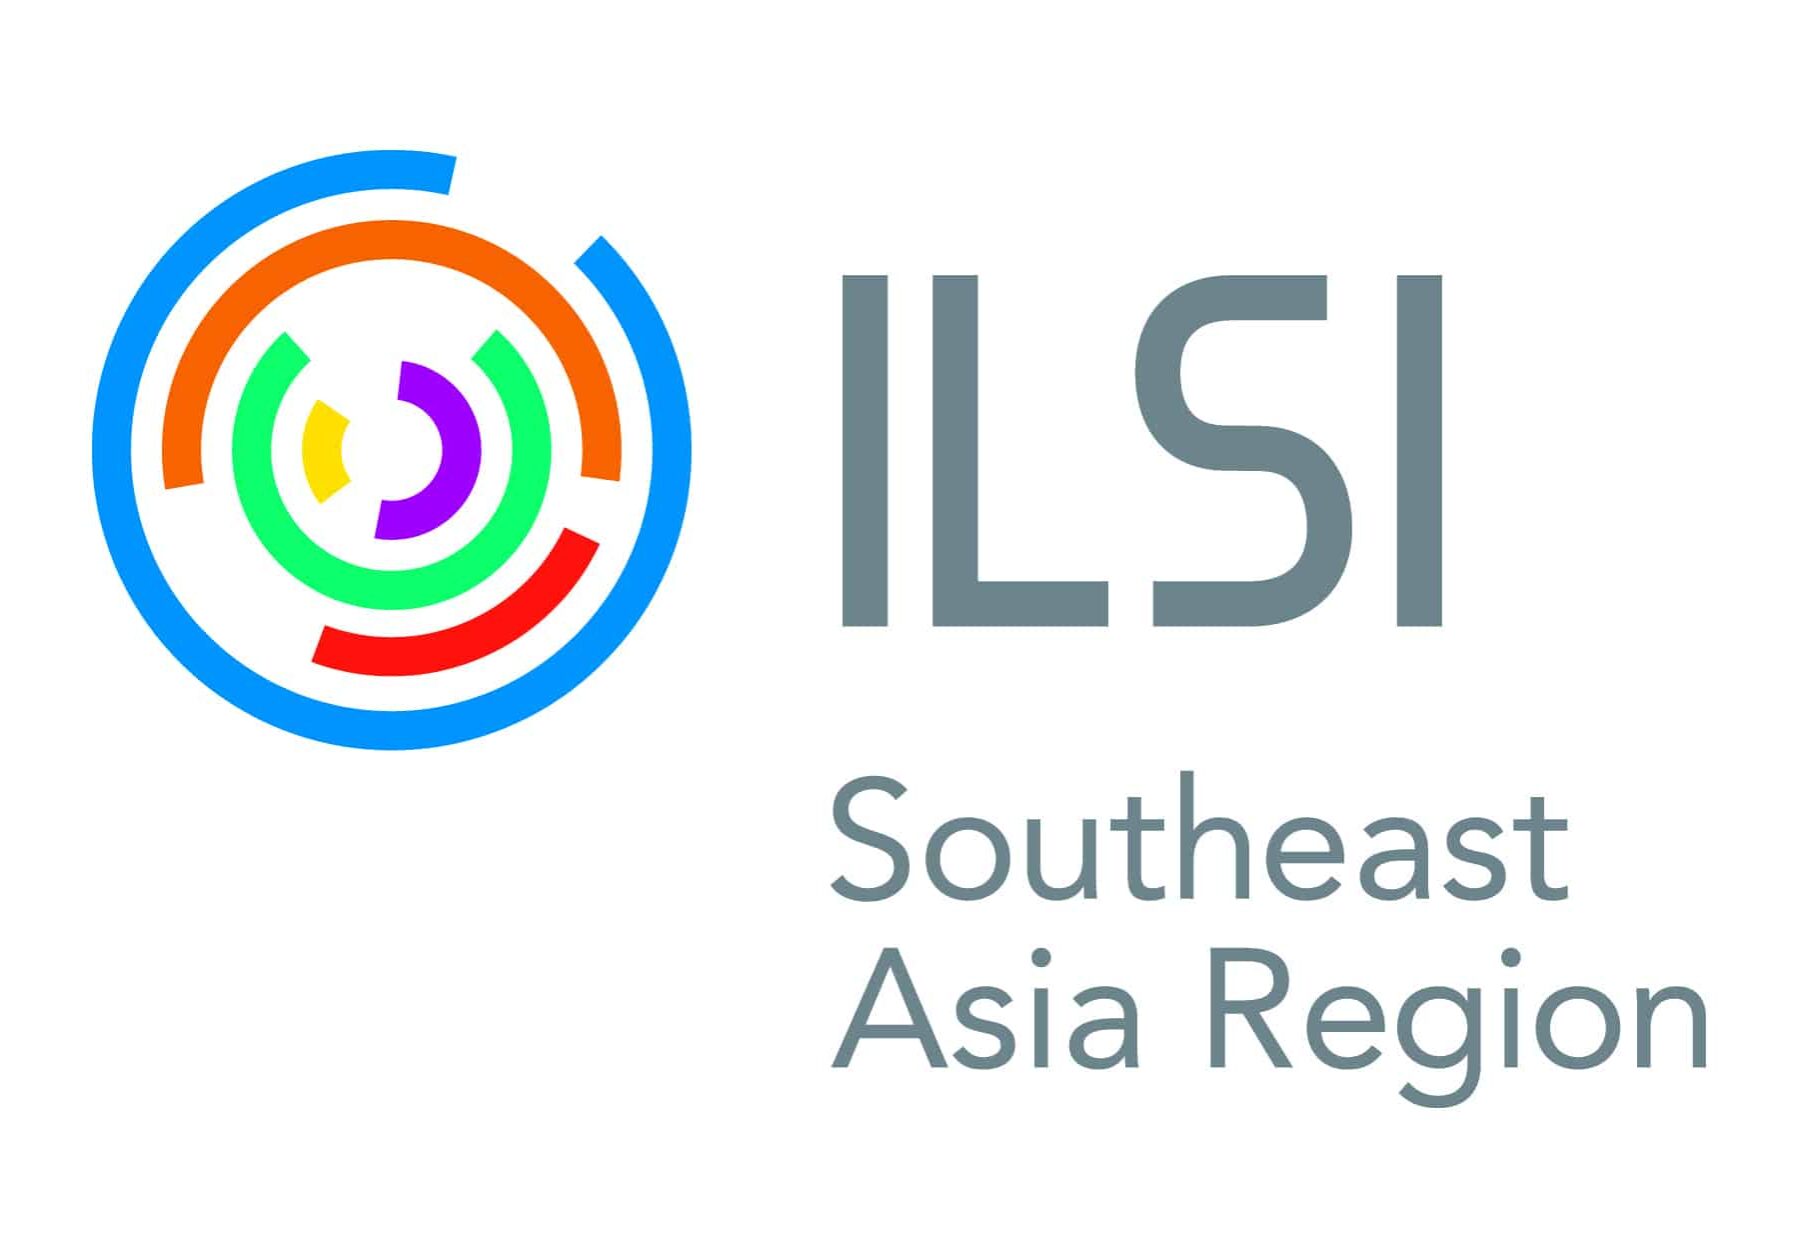 ILSI SEA Region 